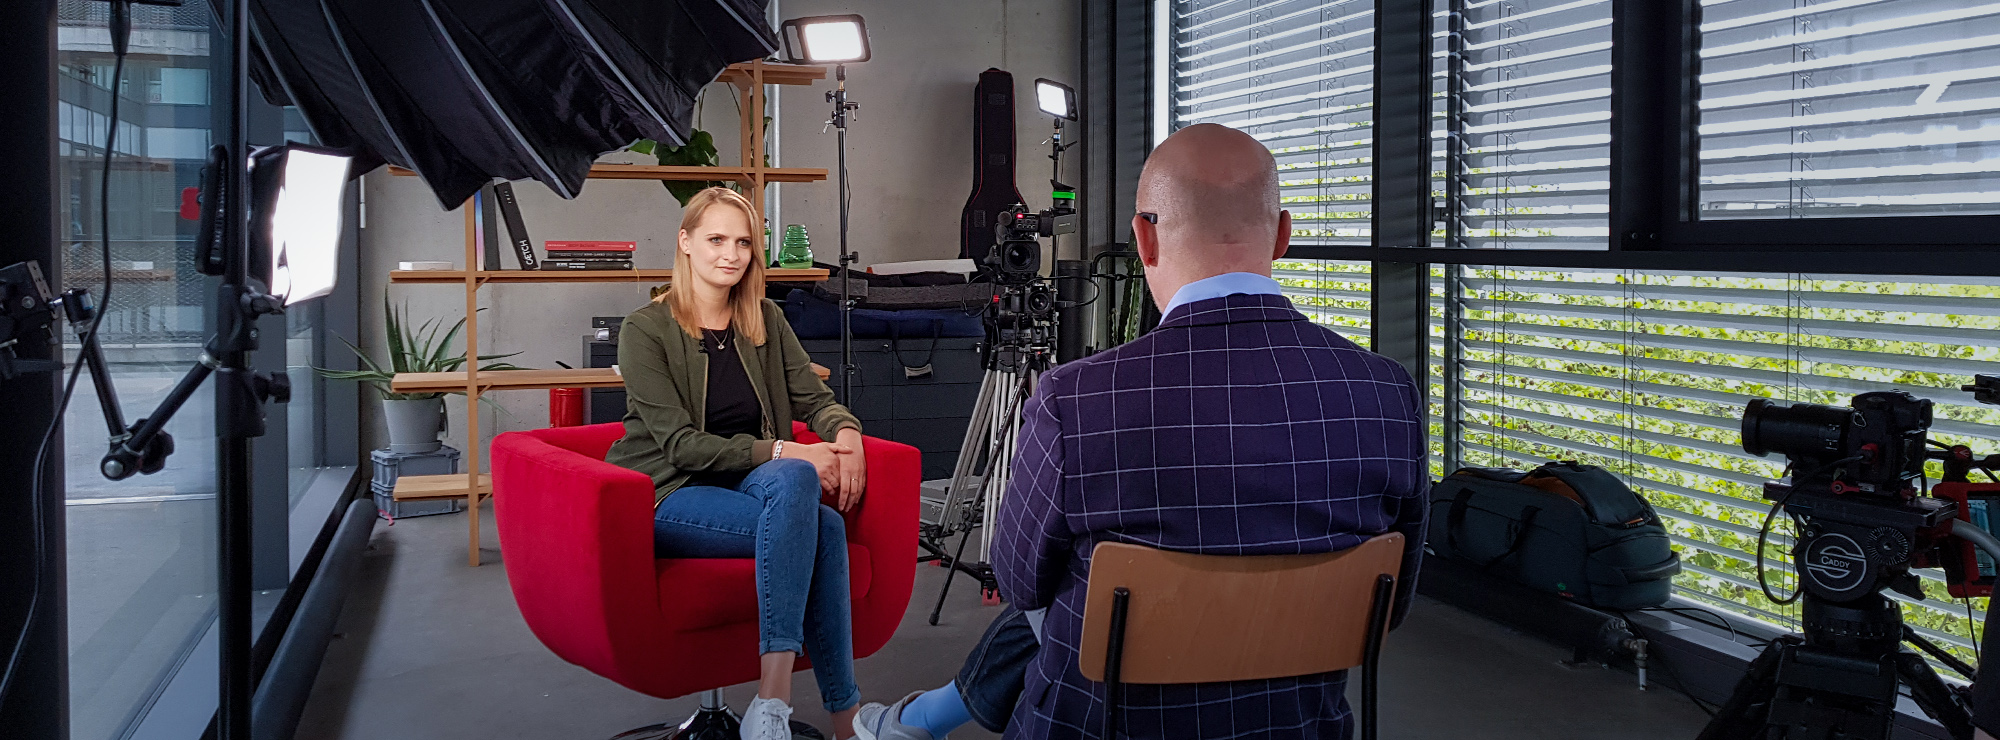 Marieke Steiner beim Interview im Roten Sessel in einem modernen und minimalistischen Büro, umgeben von Licht und Kameras